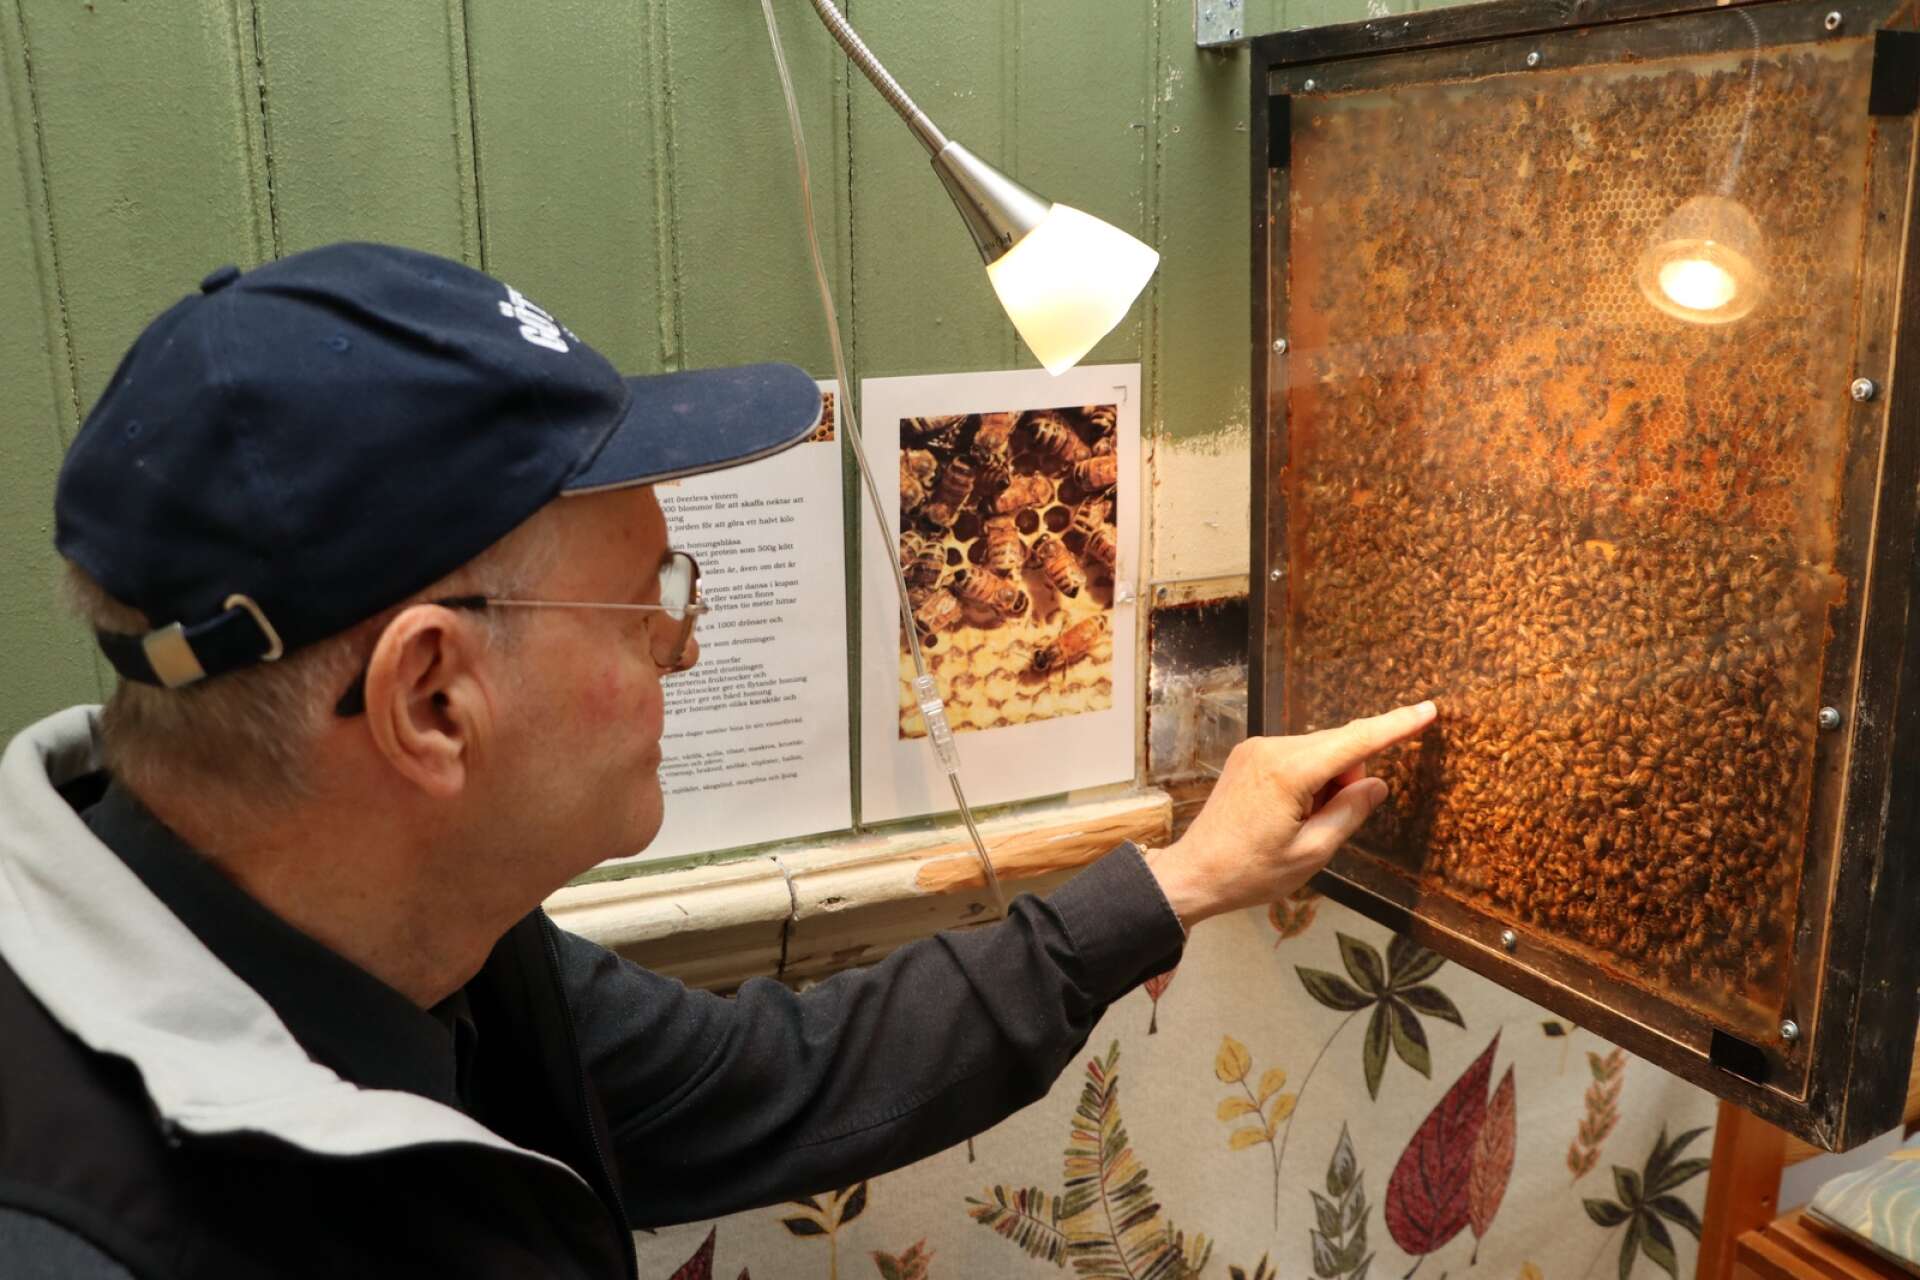 På övervåningen kan man titta rakt in i en bikupa från Ringabergets biodling. Erik Lundquist berättar att de bara finns där under säsongen innan de transporteras hem till Ringaberget igen. 